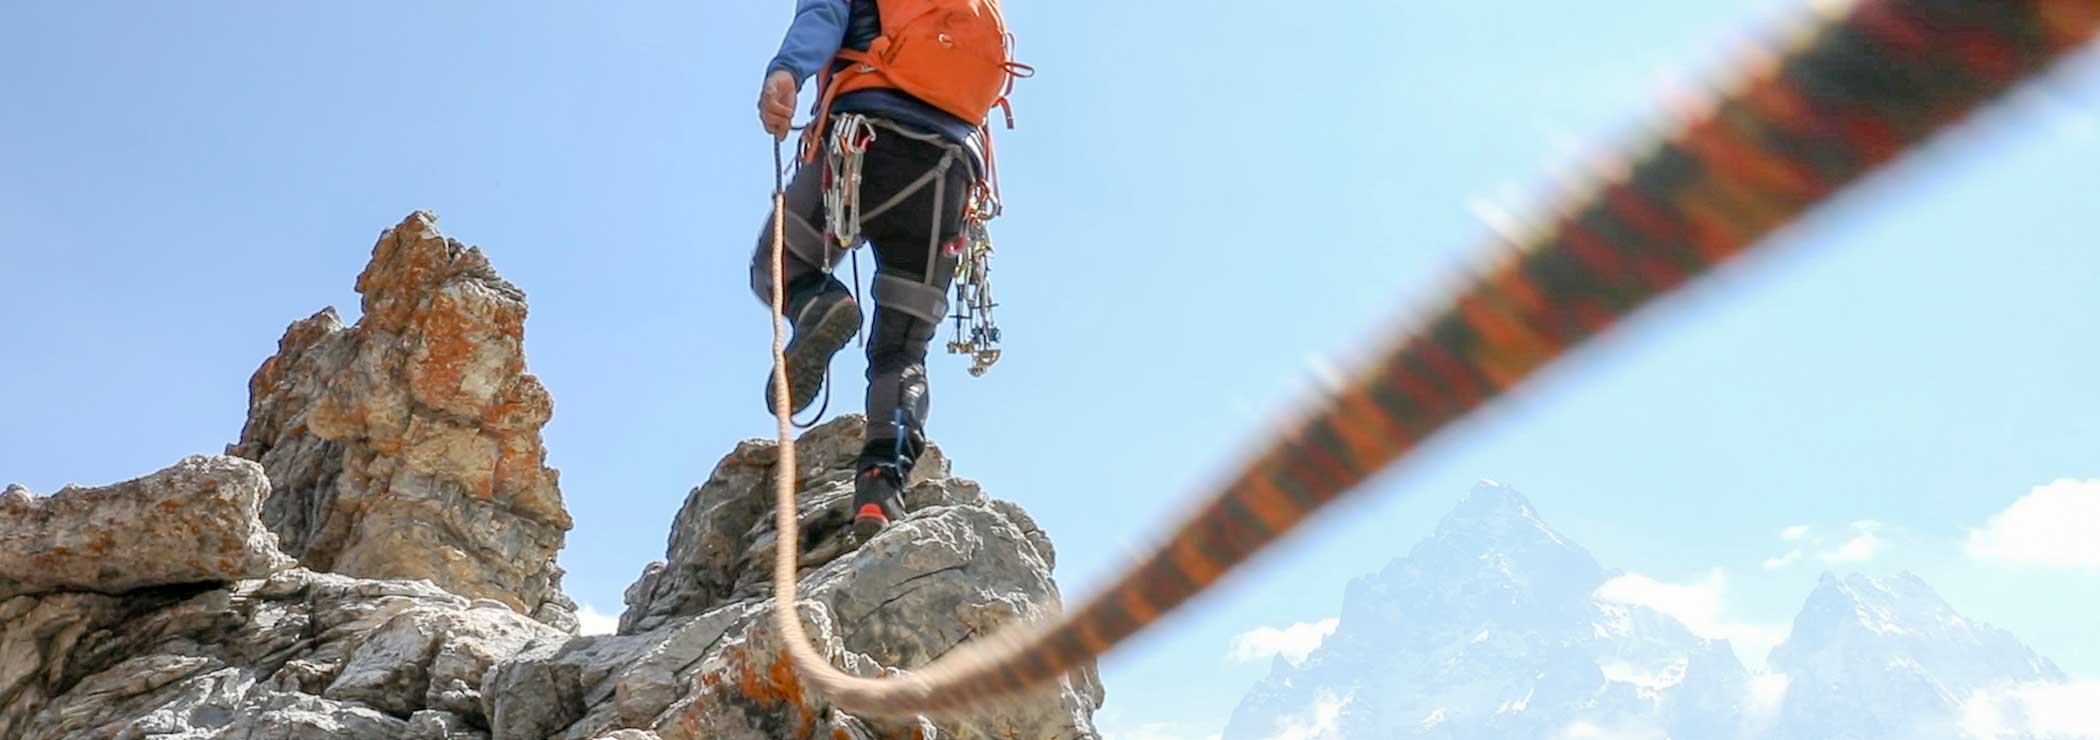 Bergsteiger am Seil